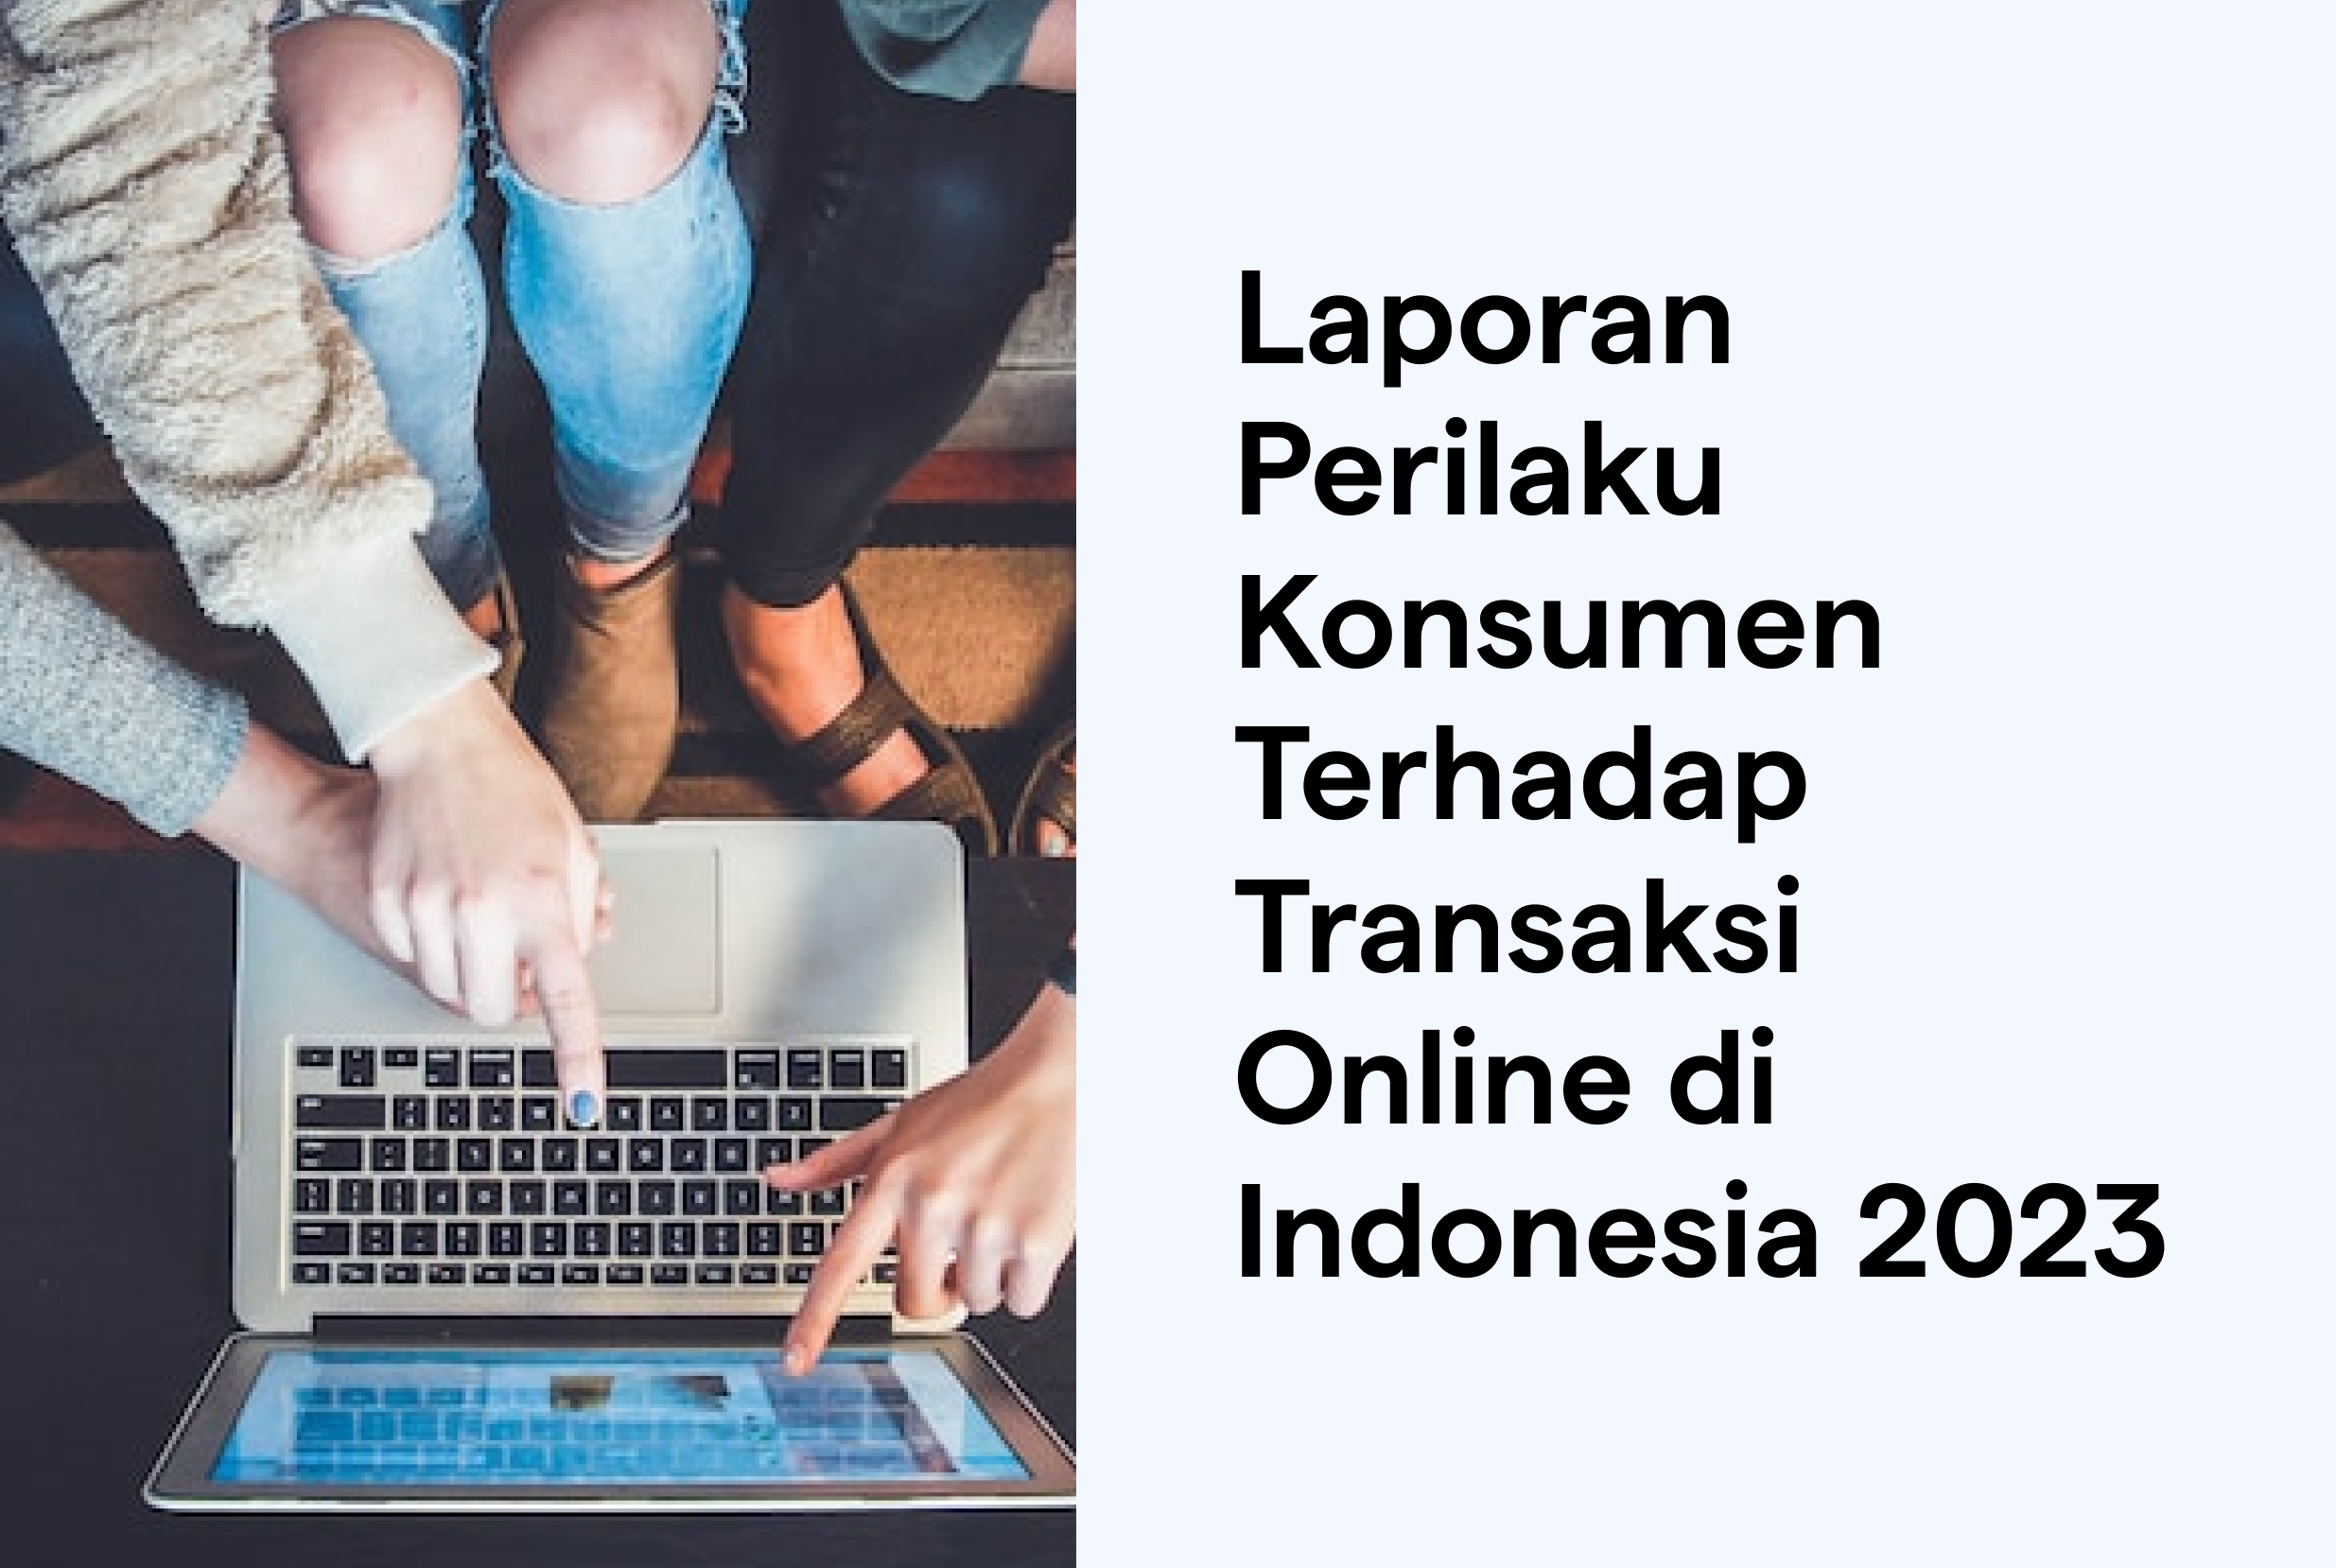 Laporan Perilaku Konsumen Terhadap Transaksi Online di Indonesia 2023